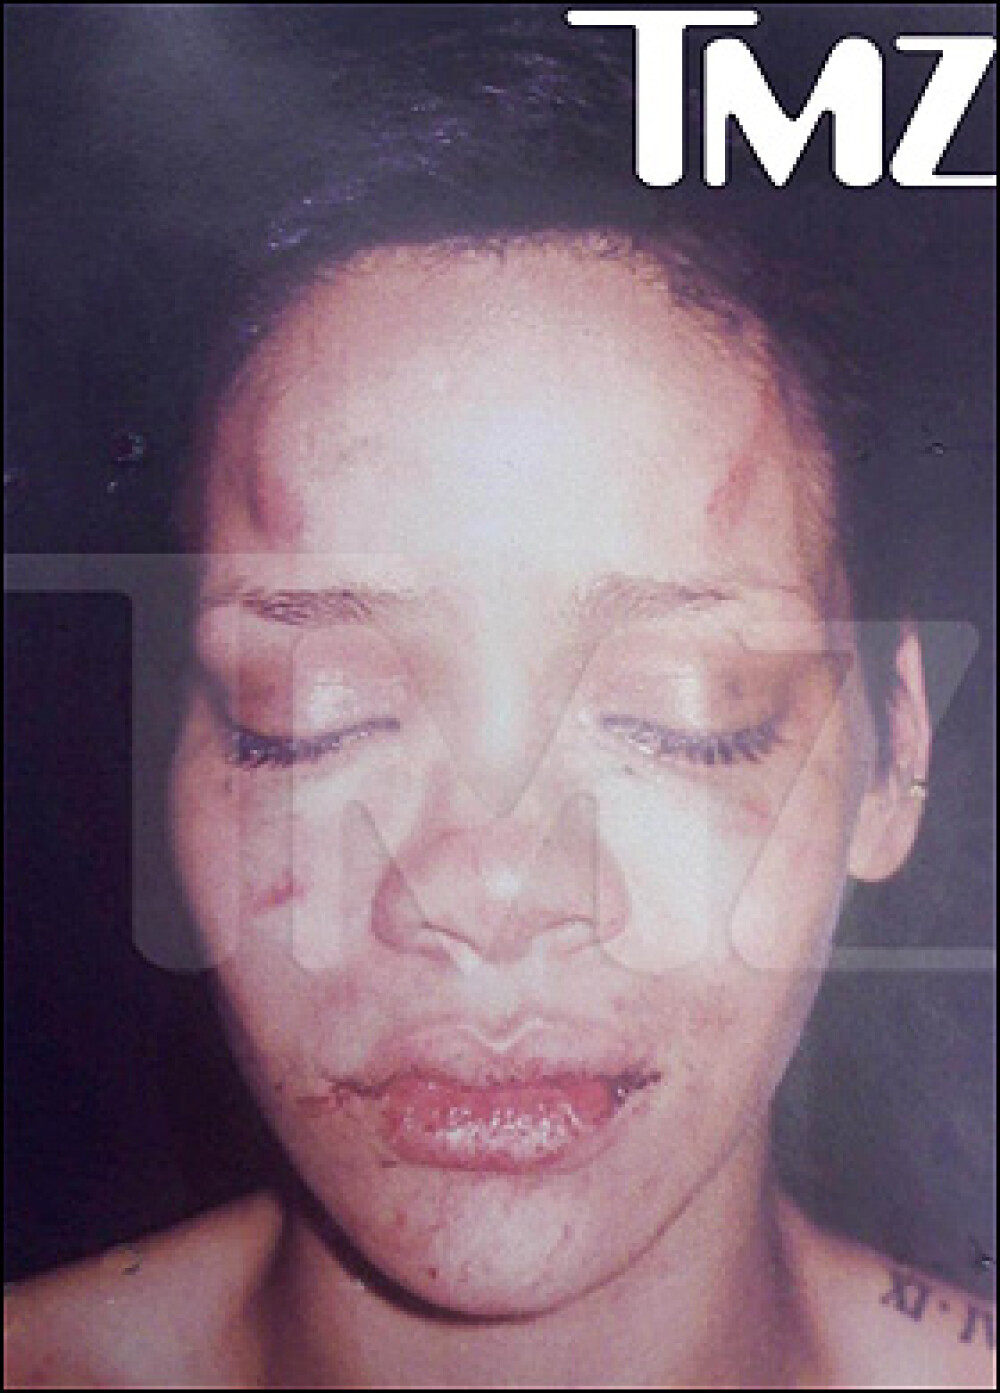 Bataie pe Rihanna. Opt persoane ranite si un club distrus. Scandalul anului in show-bizz. FOTO - Imaginea 2